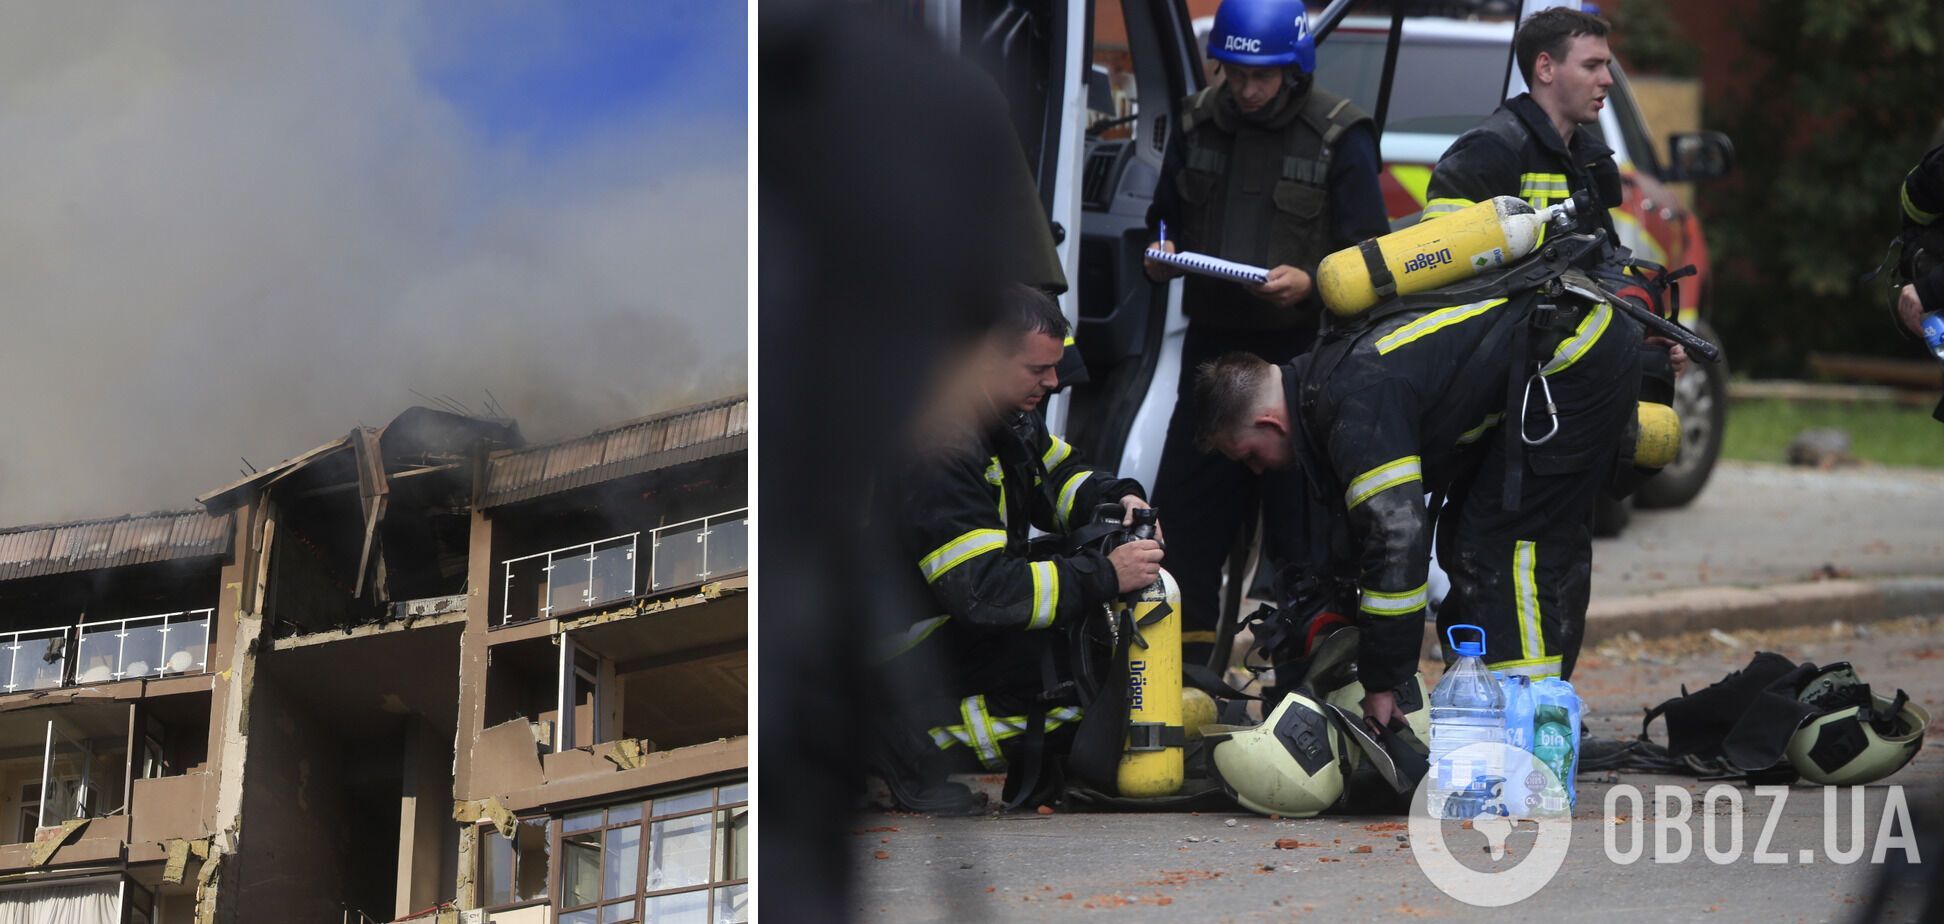 Бійці ДСНС загасили пожежу й продовжили рятувальні роботи